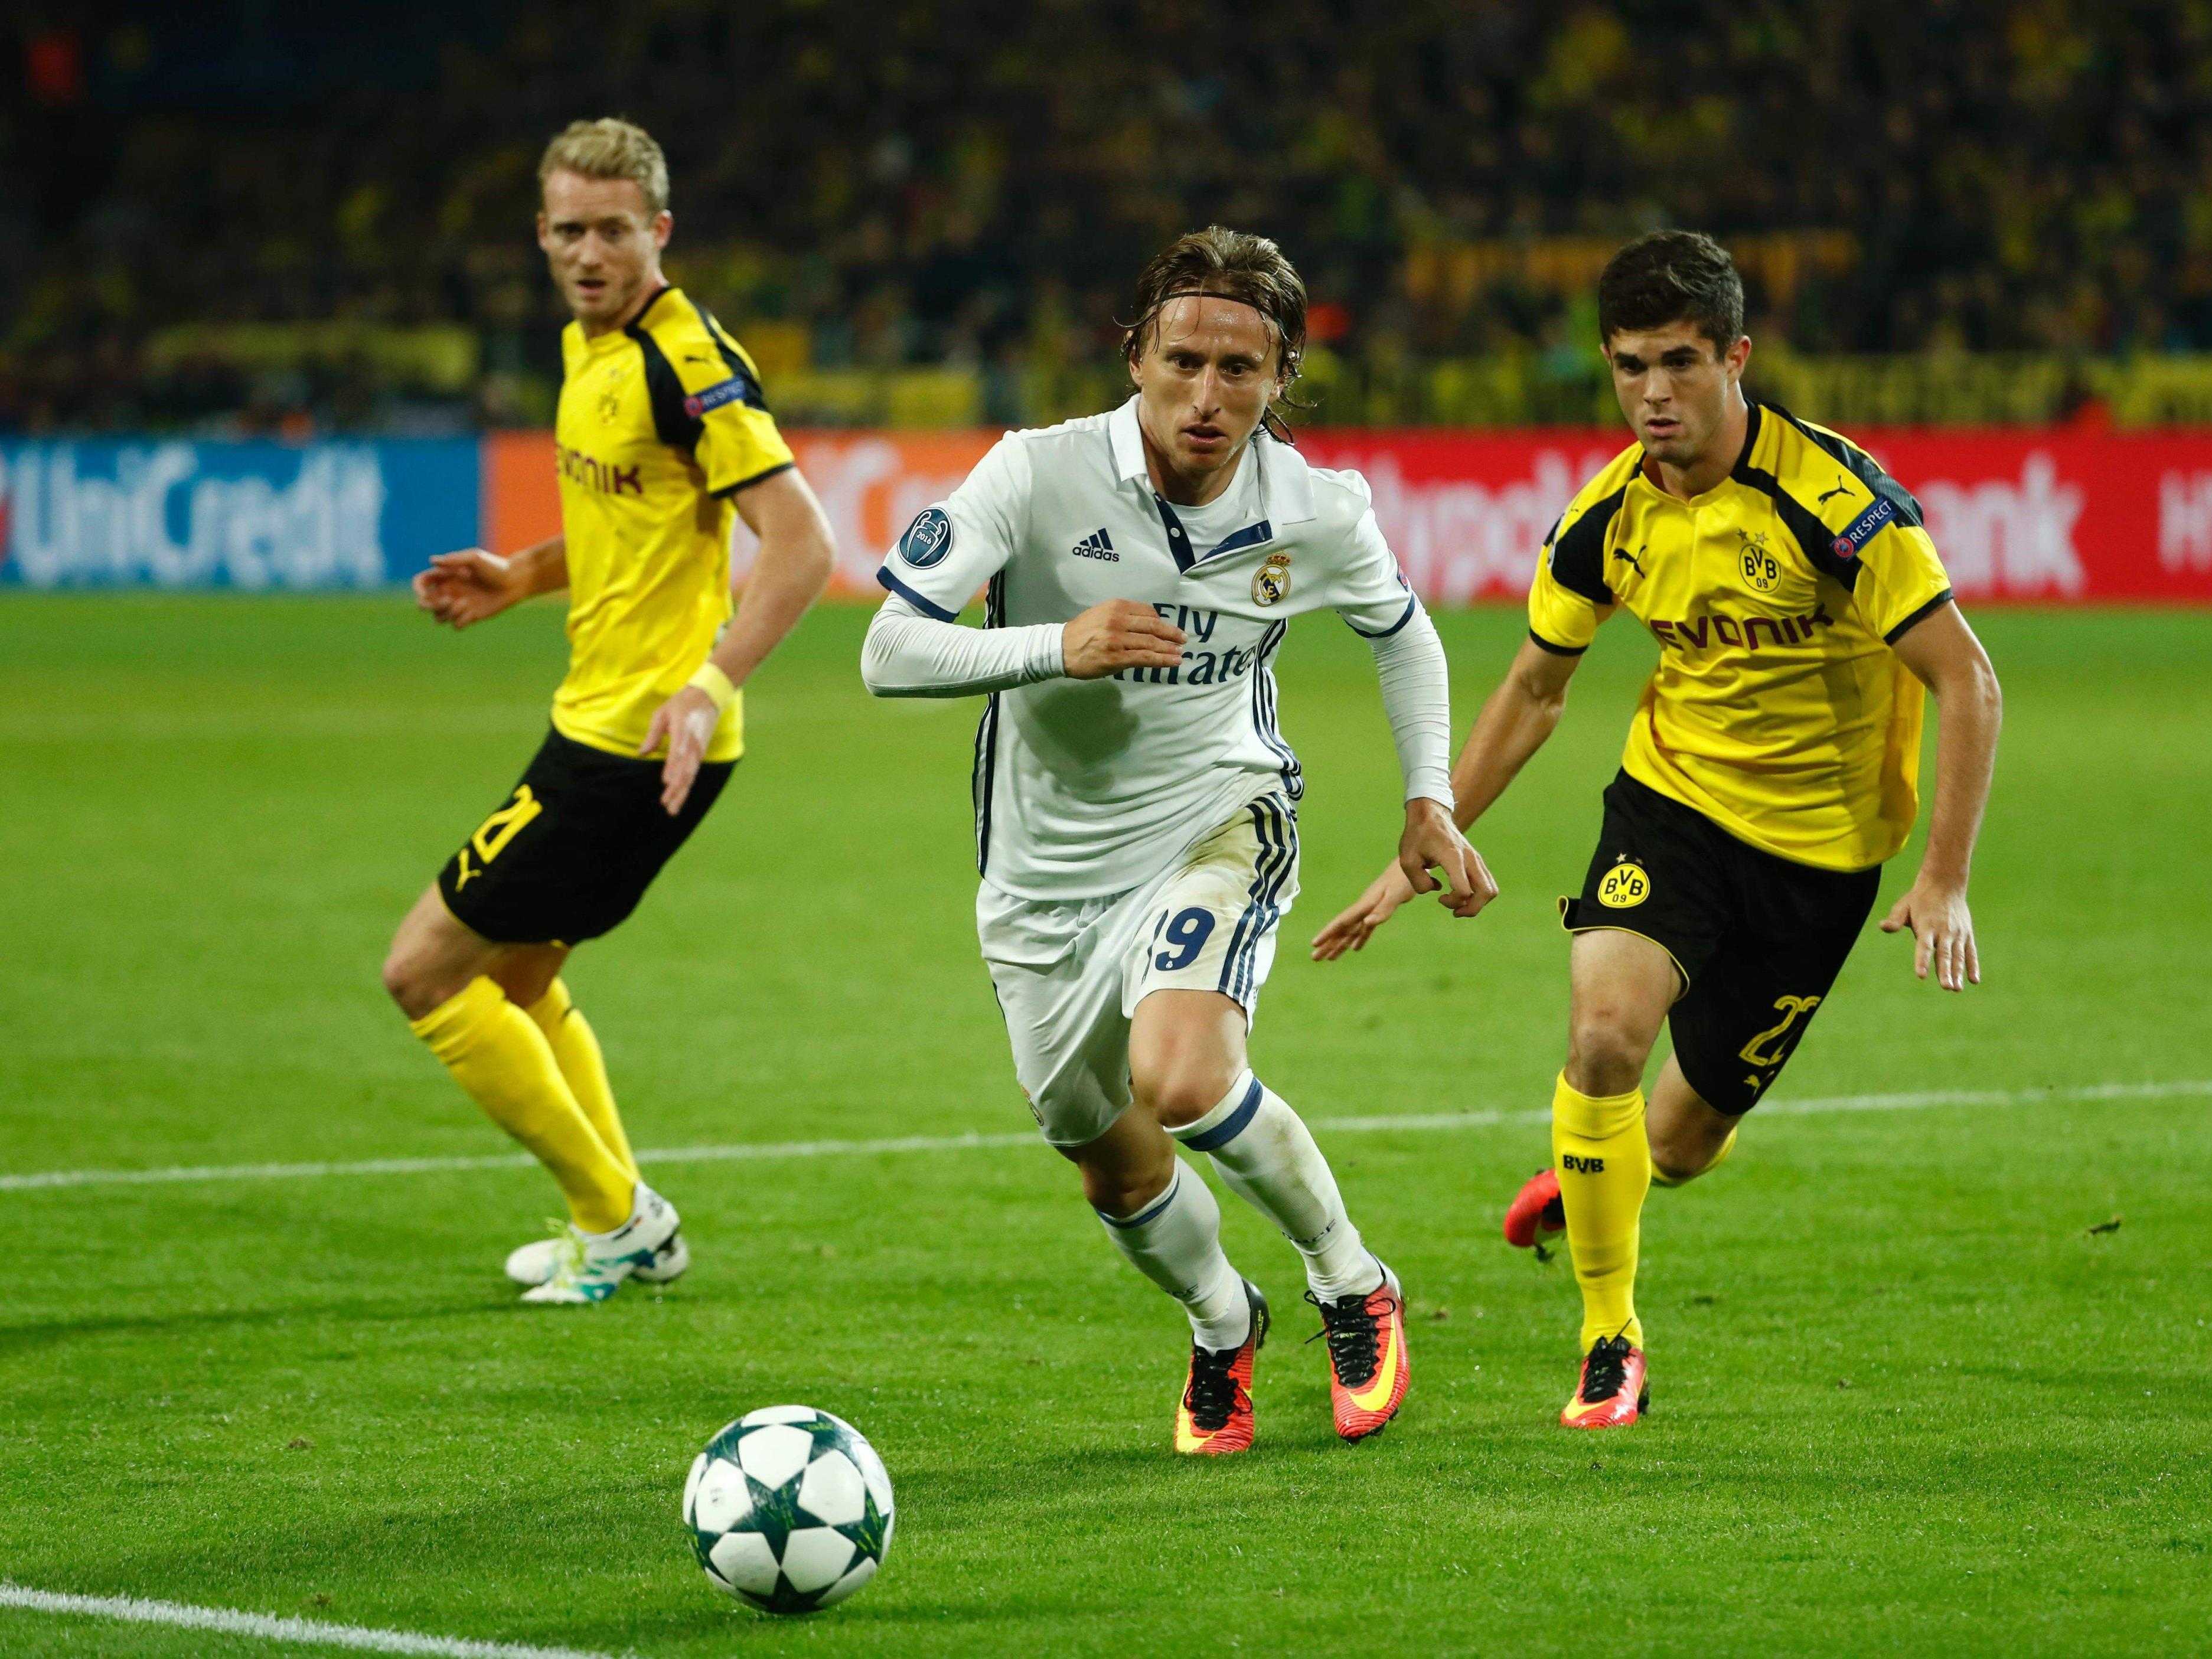 Real Madrid empfängt am letzten Spieltag der Gruppenphase Borussia Dortmund.